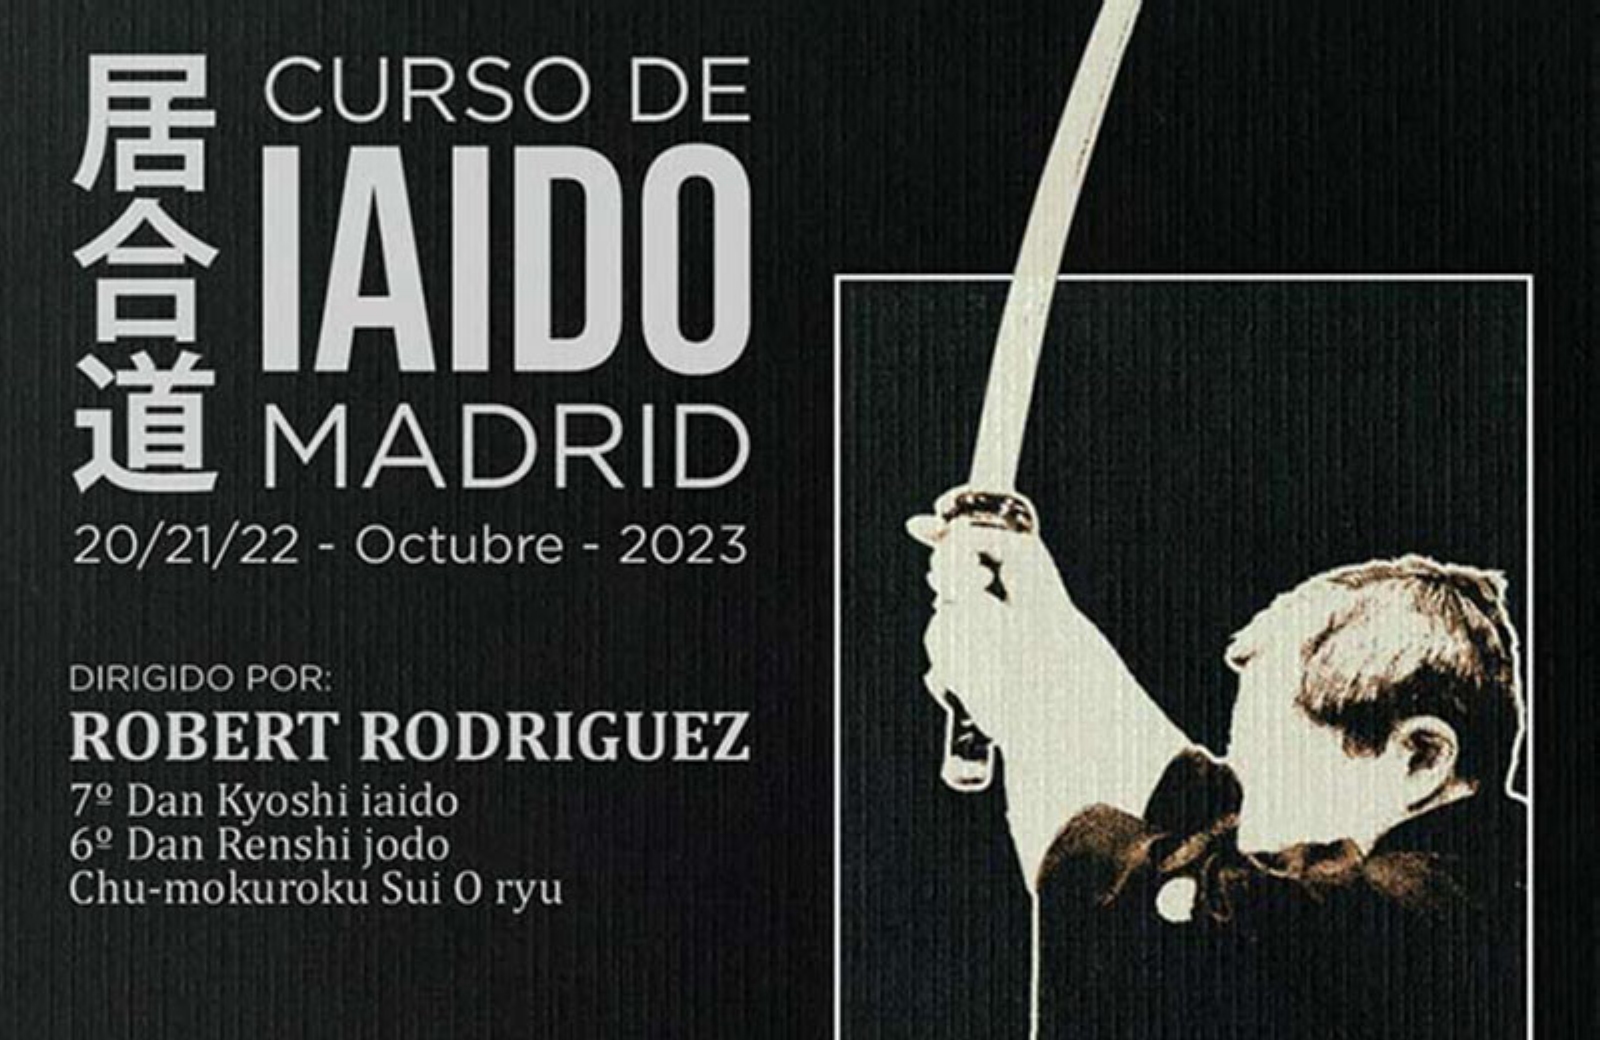 Curso de Iaido en Madrid, impartido por Robert Rodriguez